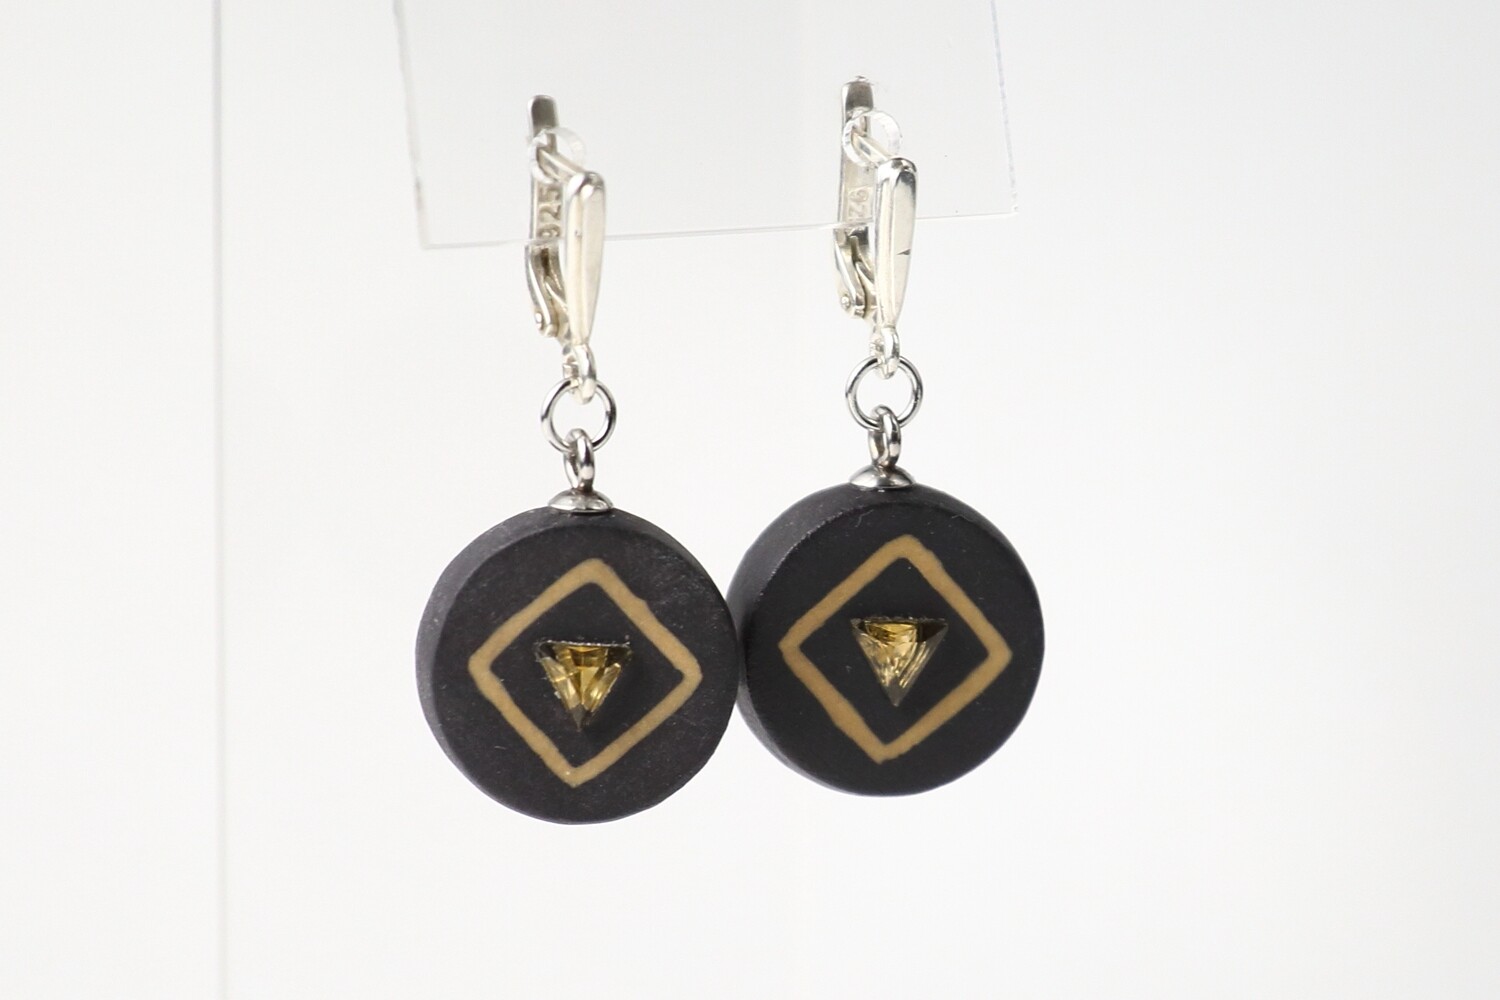 Круглые серьги из черного фарфора с натуральными камнями треугольной формы.
Black porcelain earrings, circle  with a natural stone.